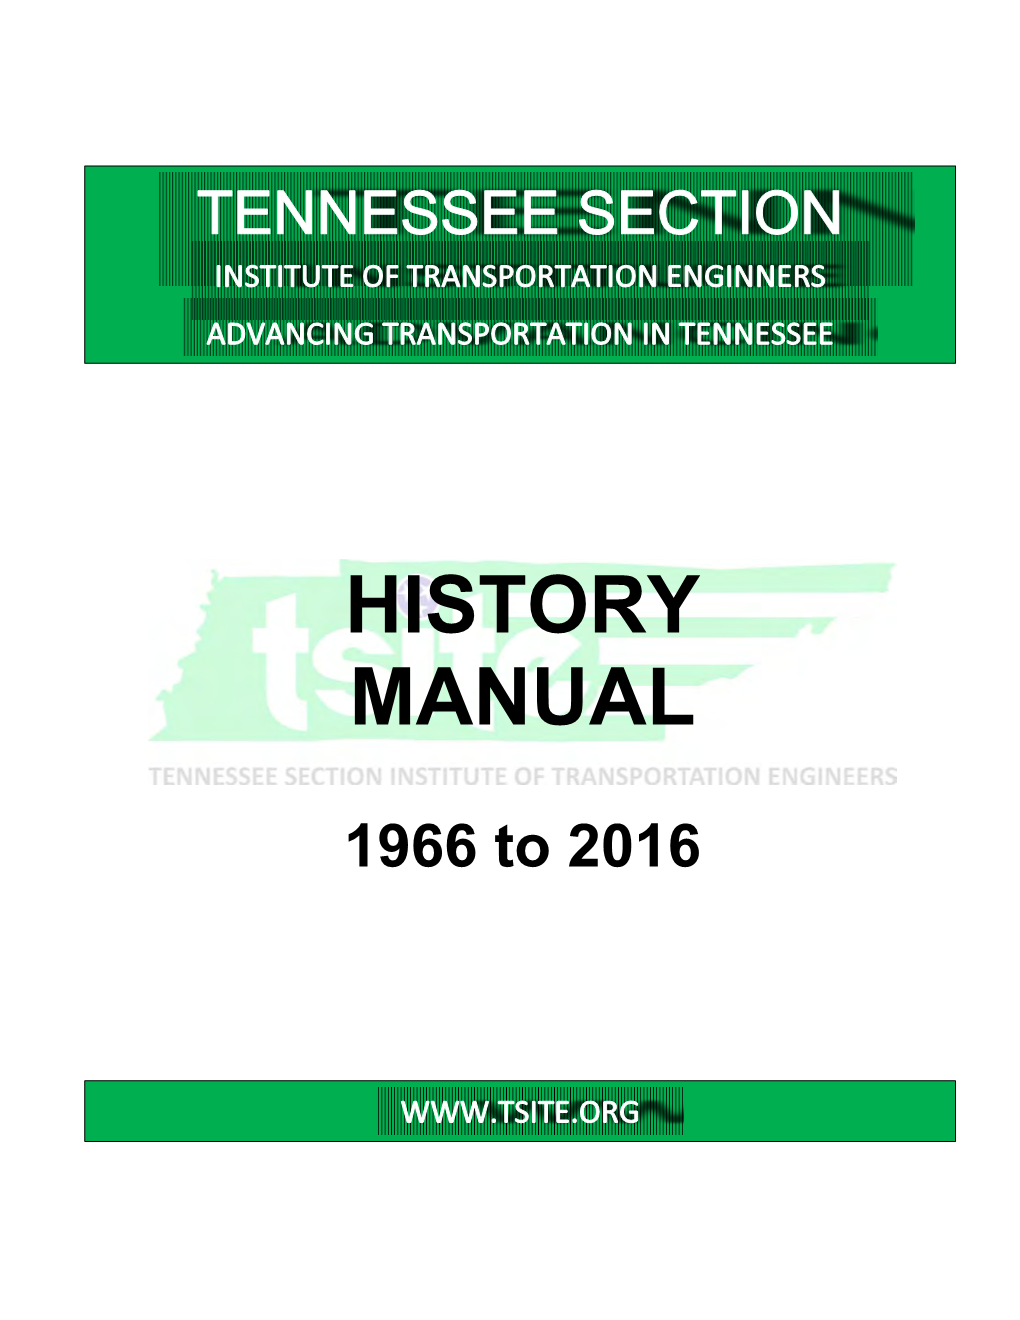 TSITE History Manual 1966 to 2016